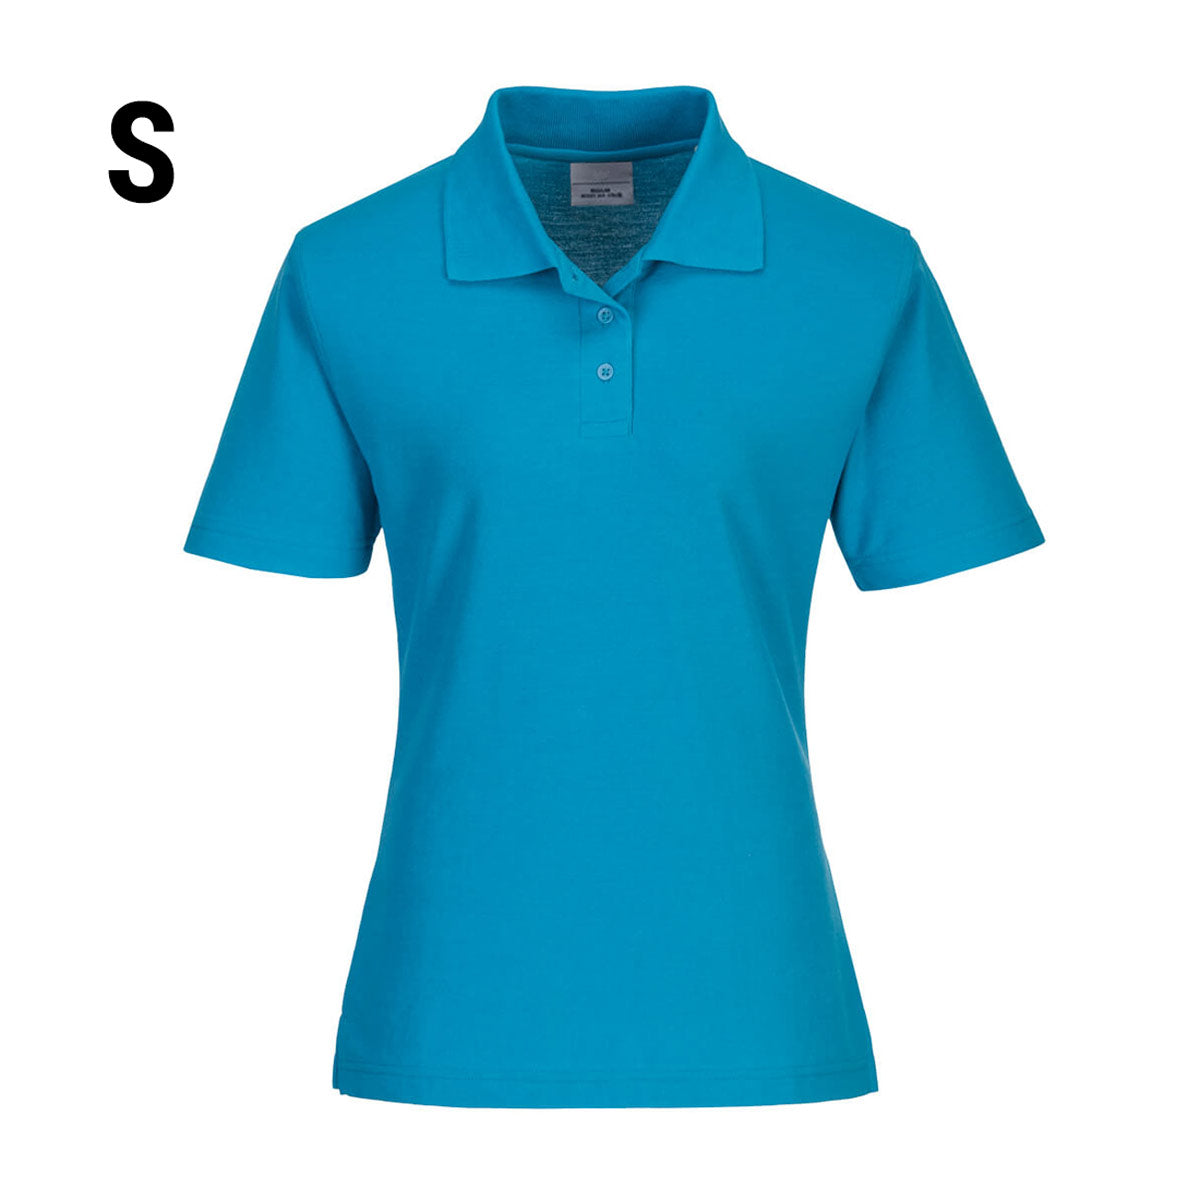 Poloskjorte til damer - Vannblå - størrelse: S